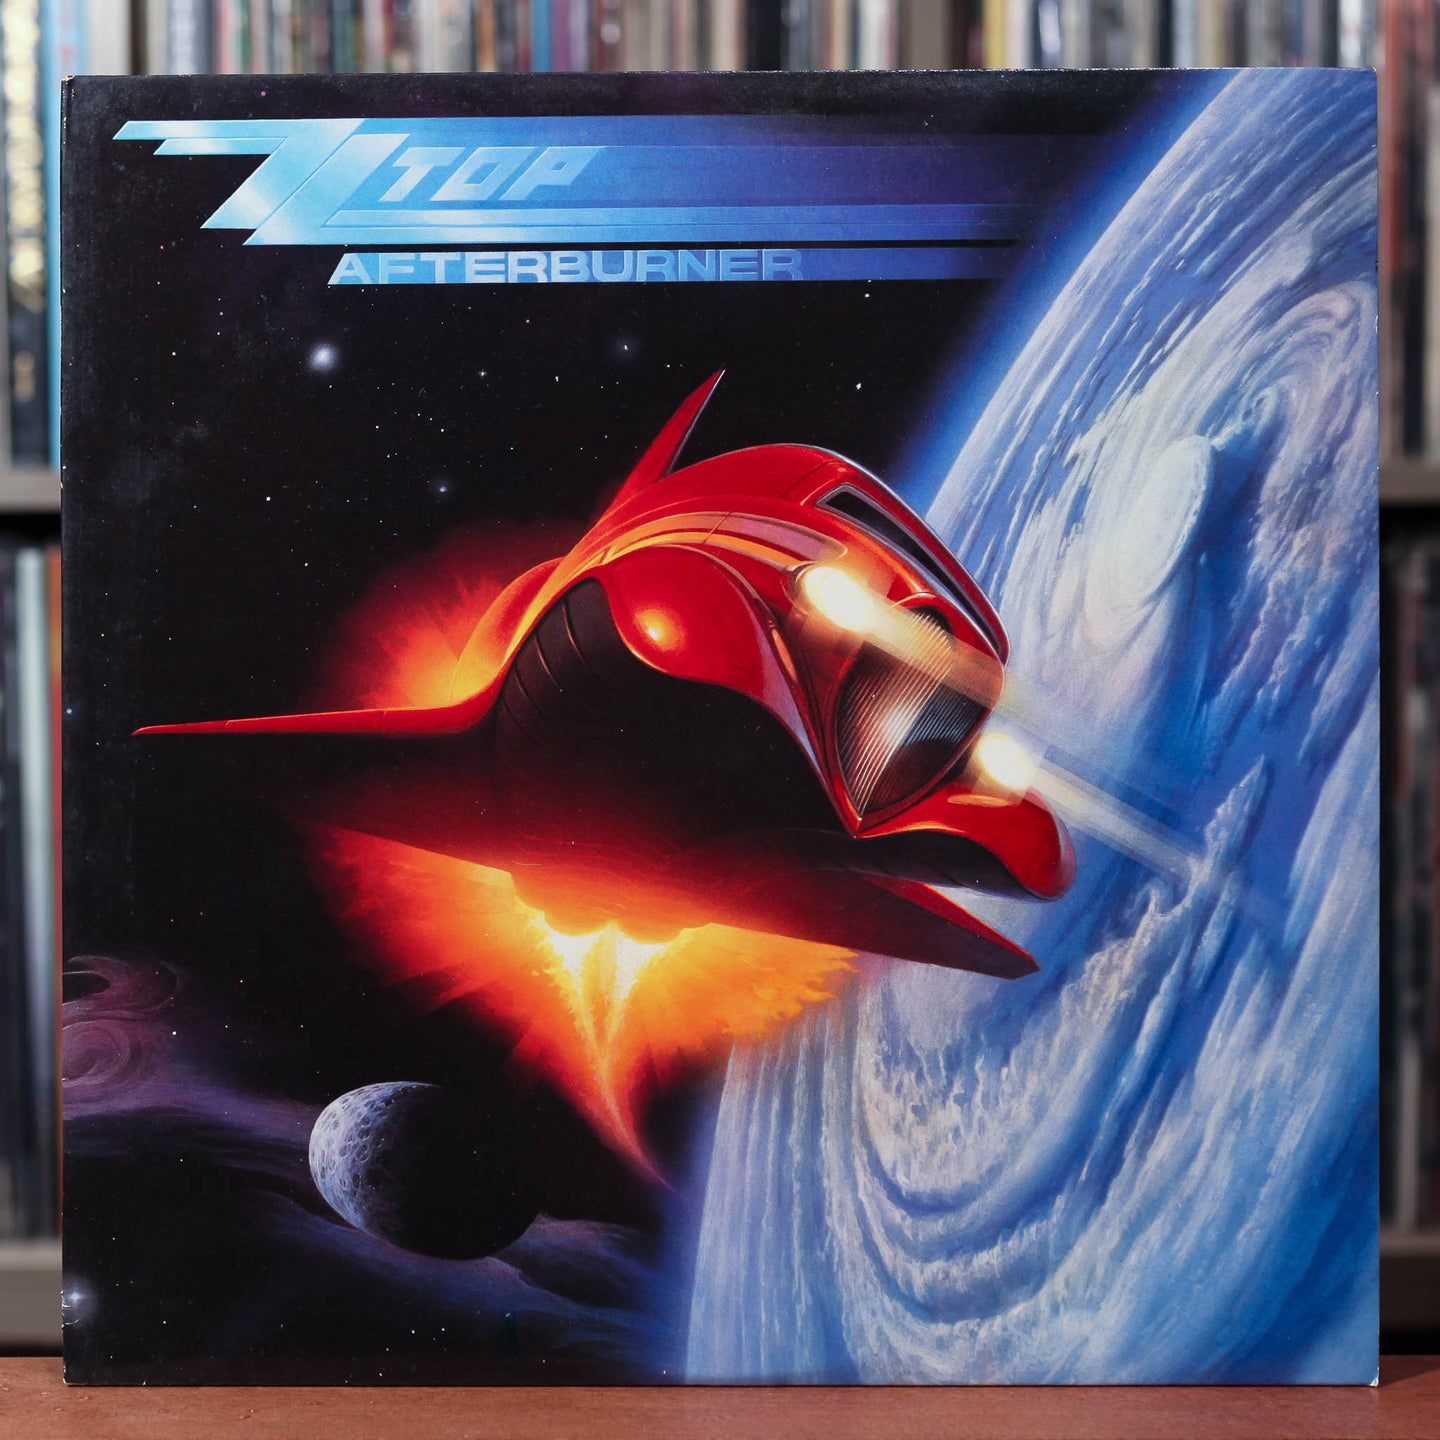 ZZ Top - Afterburner - 1985 Warner, VG++/VG++